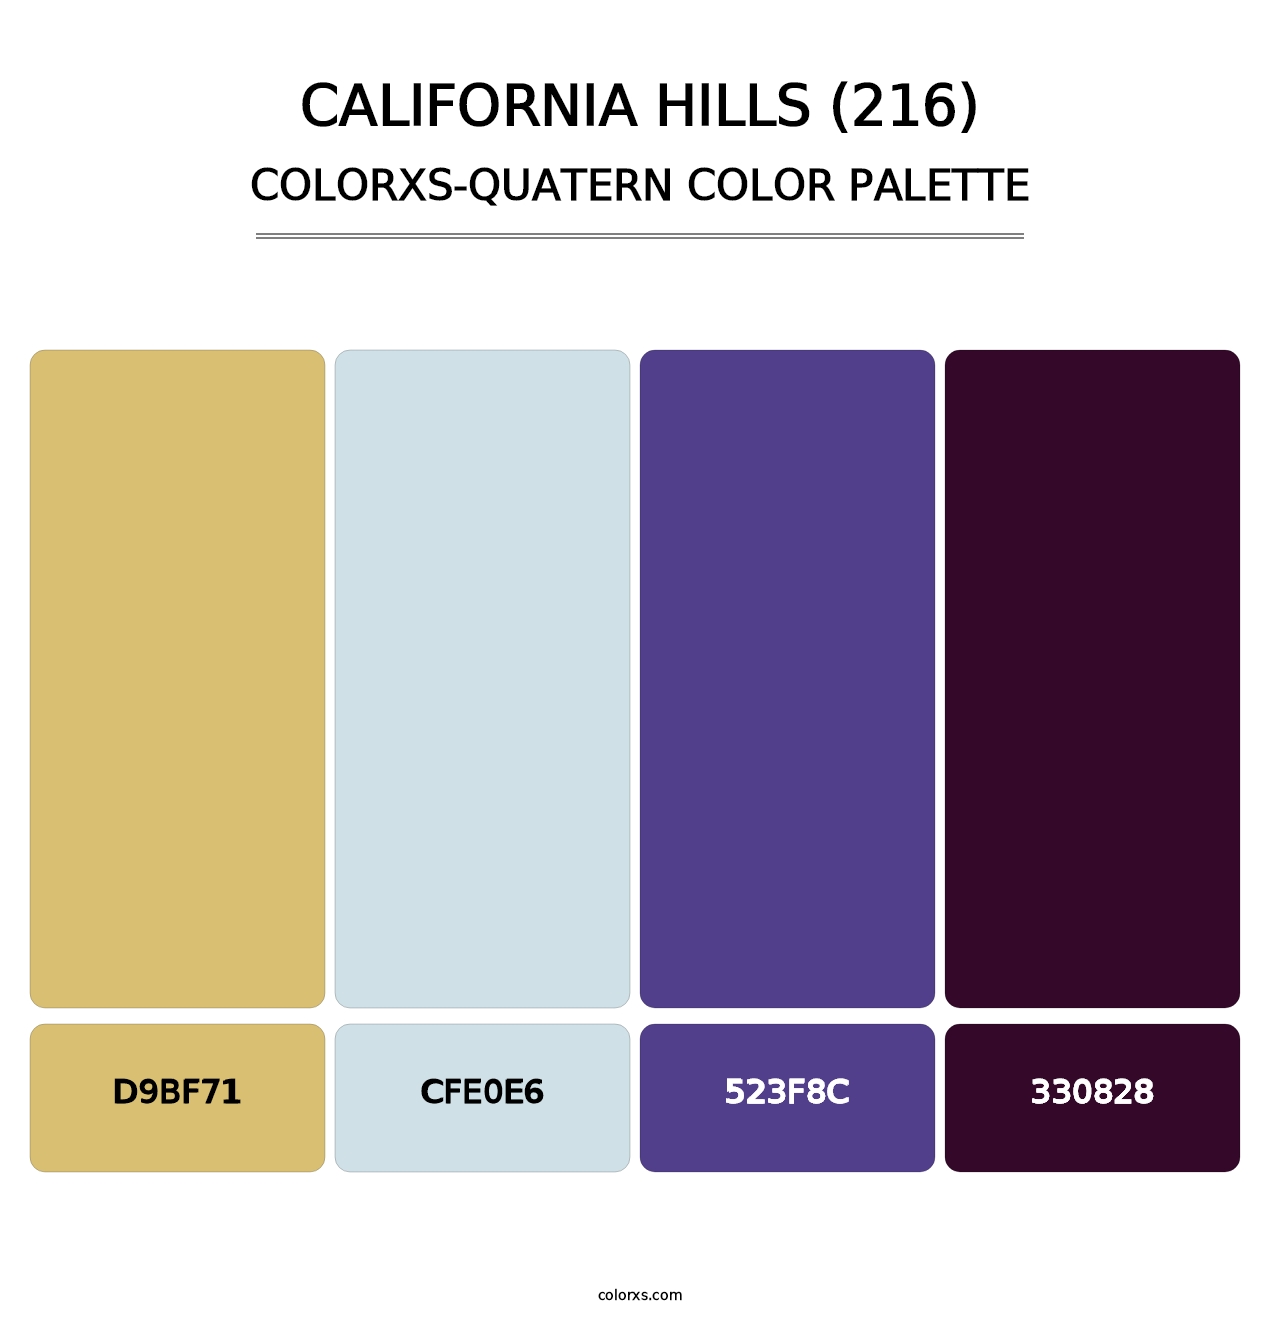 California Hills (216) - Colorxs Quatern Palette